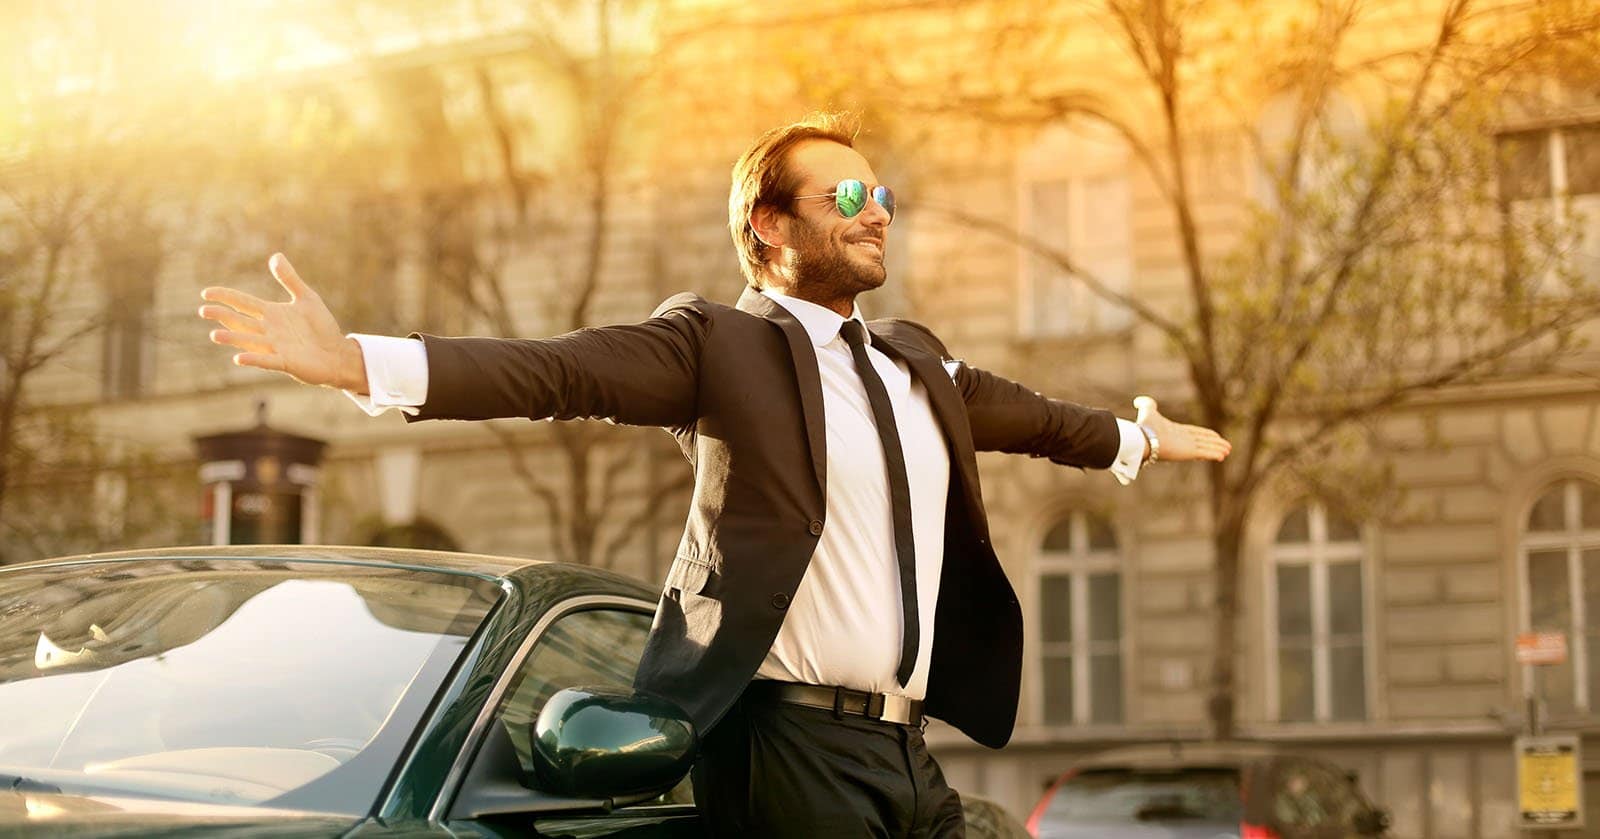 Mann in Anzug und Sonnenbrille steht mit ausgestreckten Armen vor einem Auto